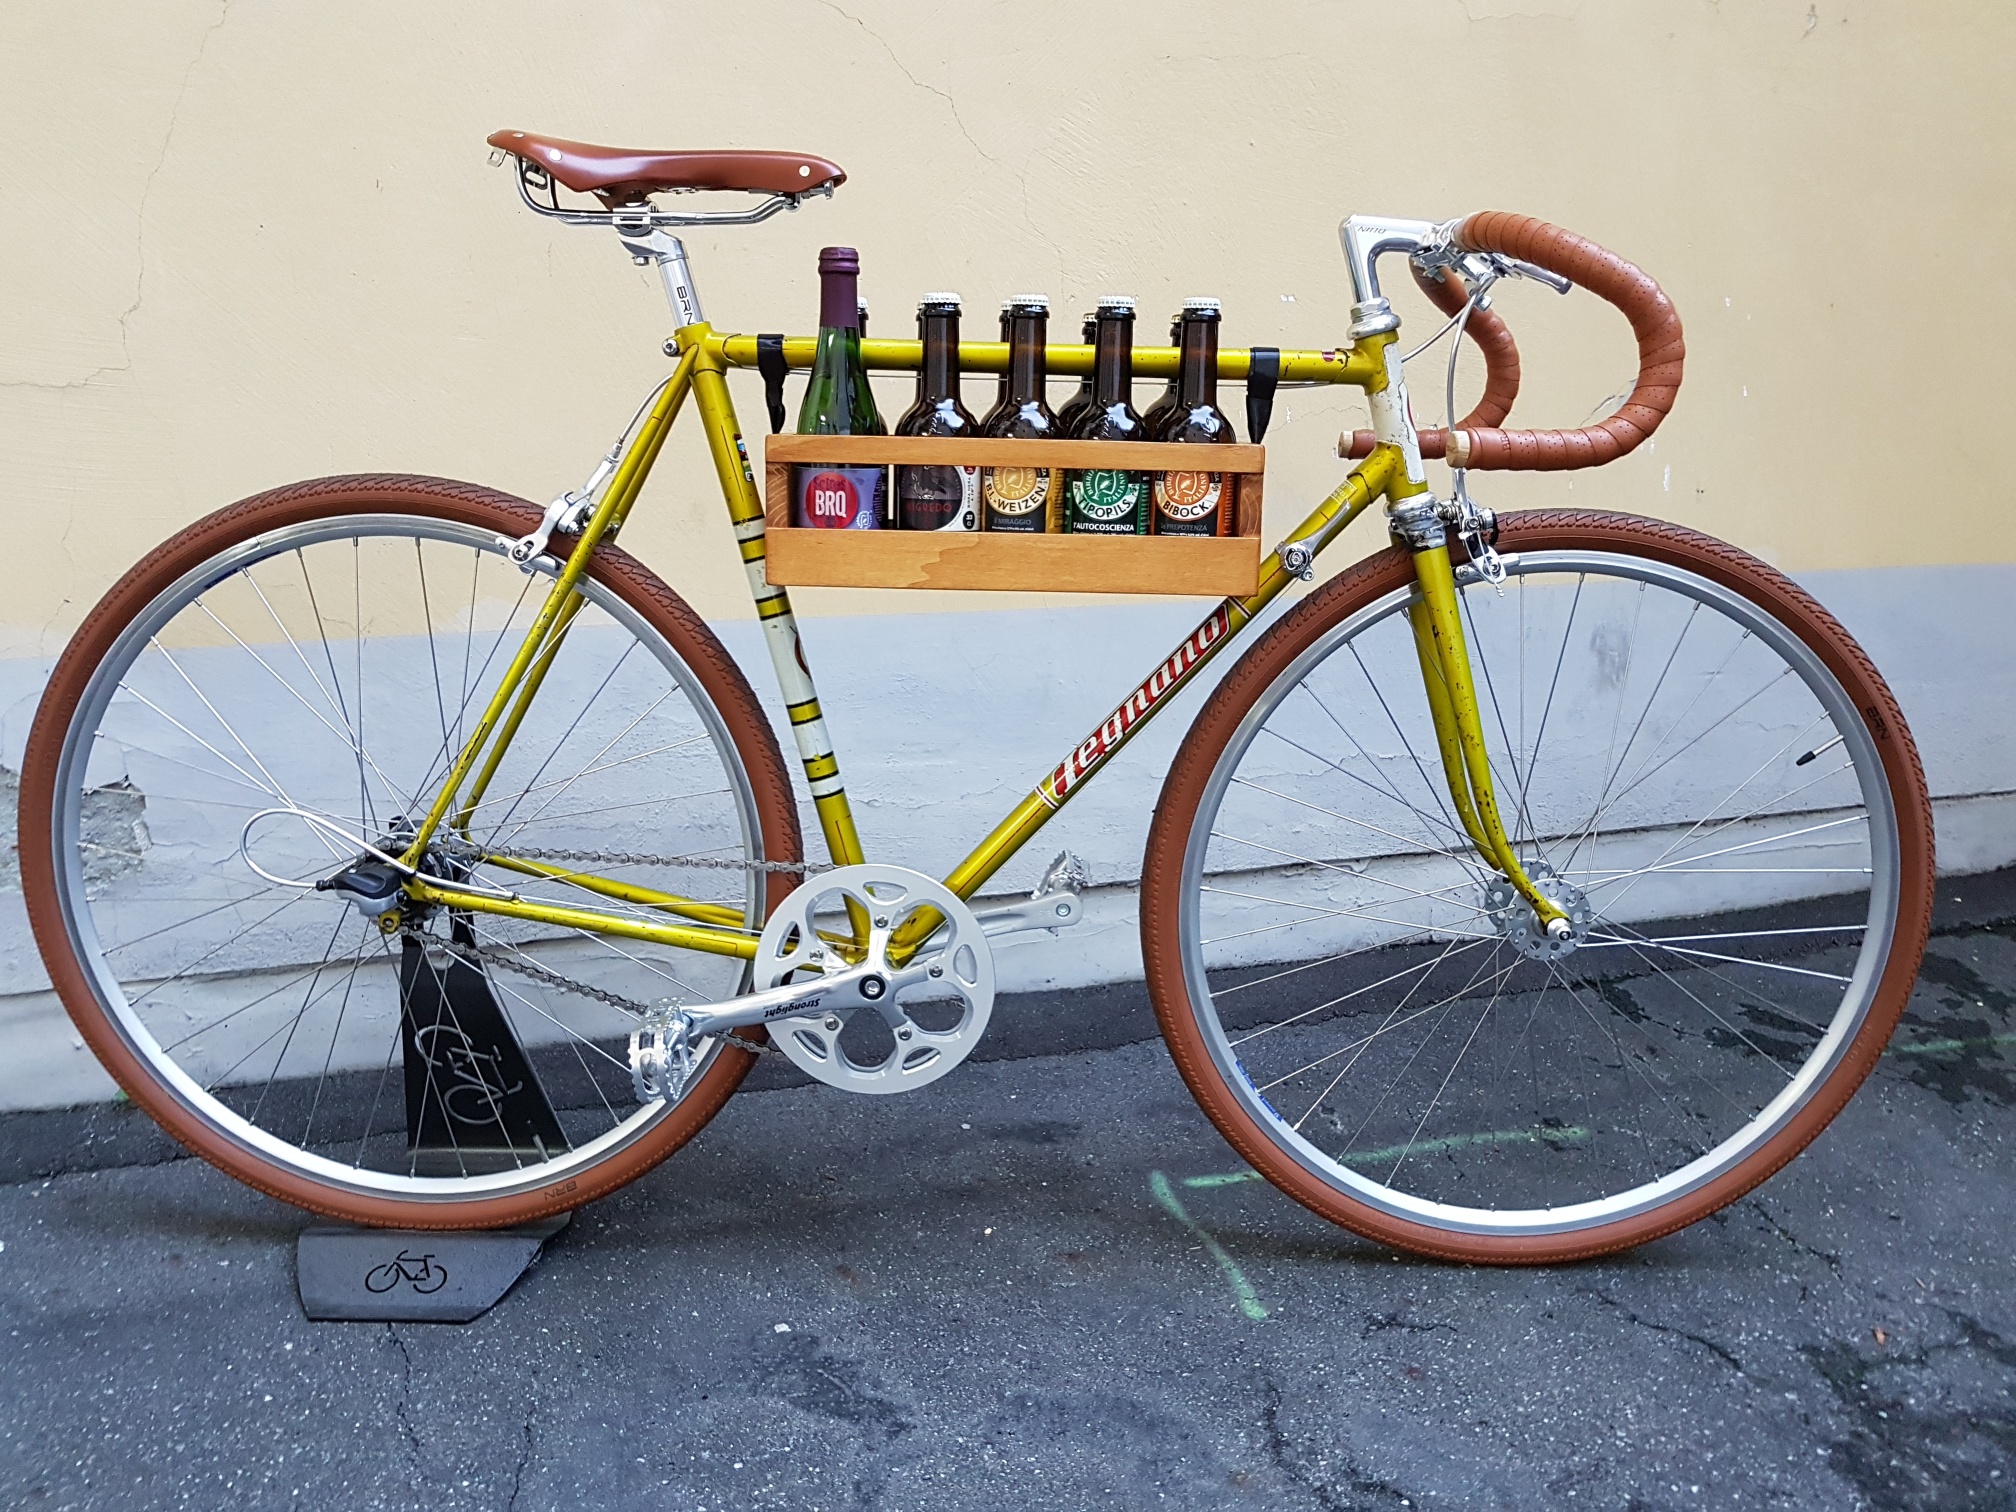 Si riparano biciclette, ci si ripara dall'inverno con tapas e birre artigianali. Bici&Birra a Torino unisce le passioni per il pedali e per il malto